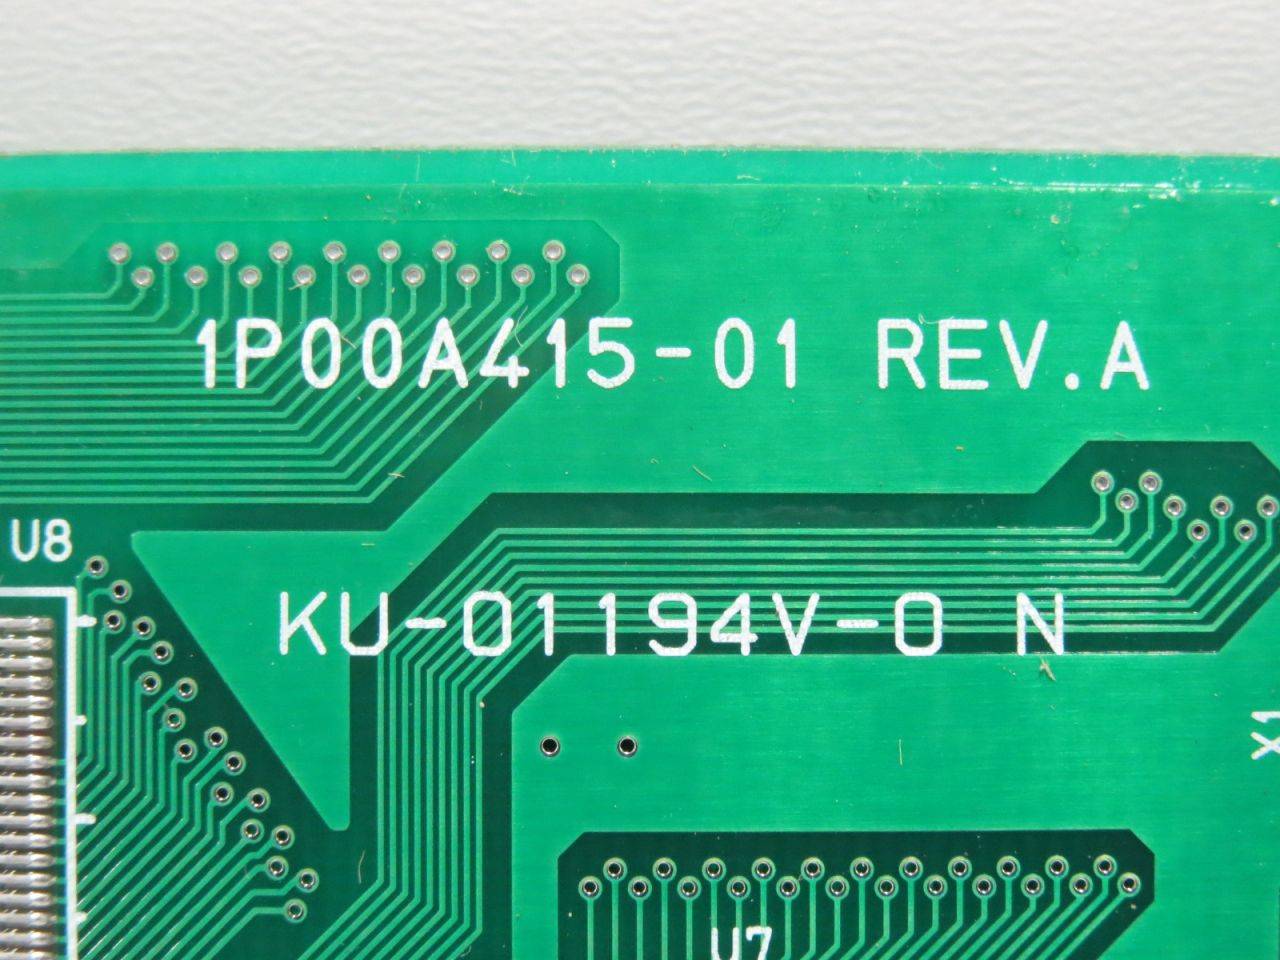 Futaba GP1045A07 1P00A415-01 REV.A